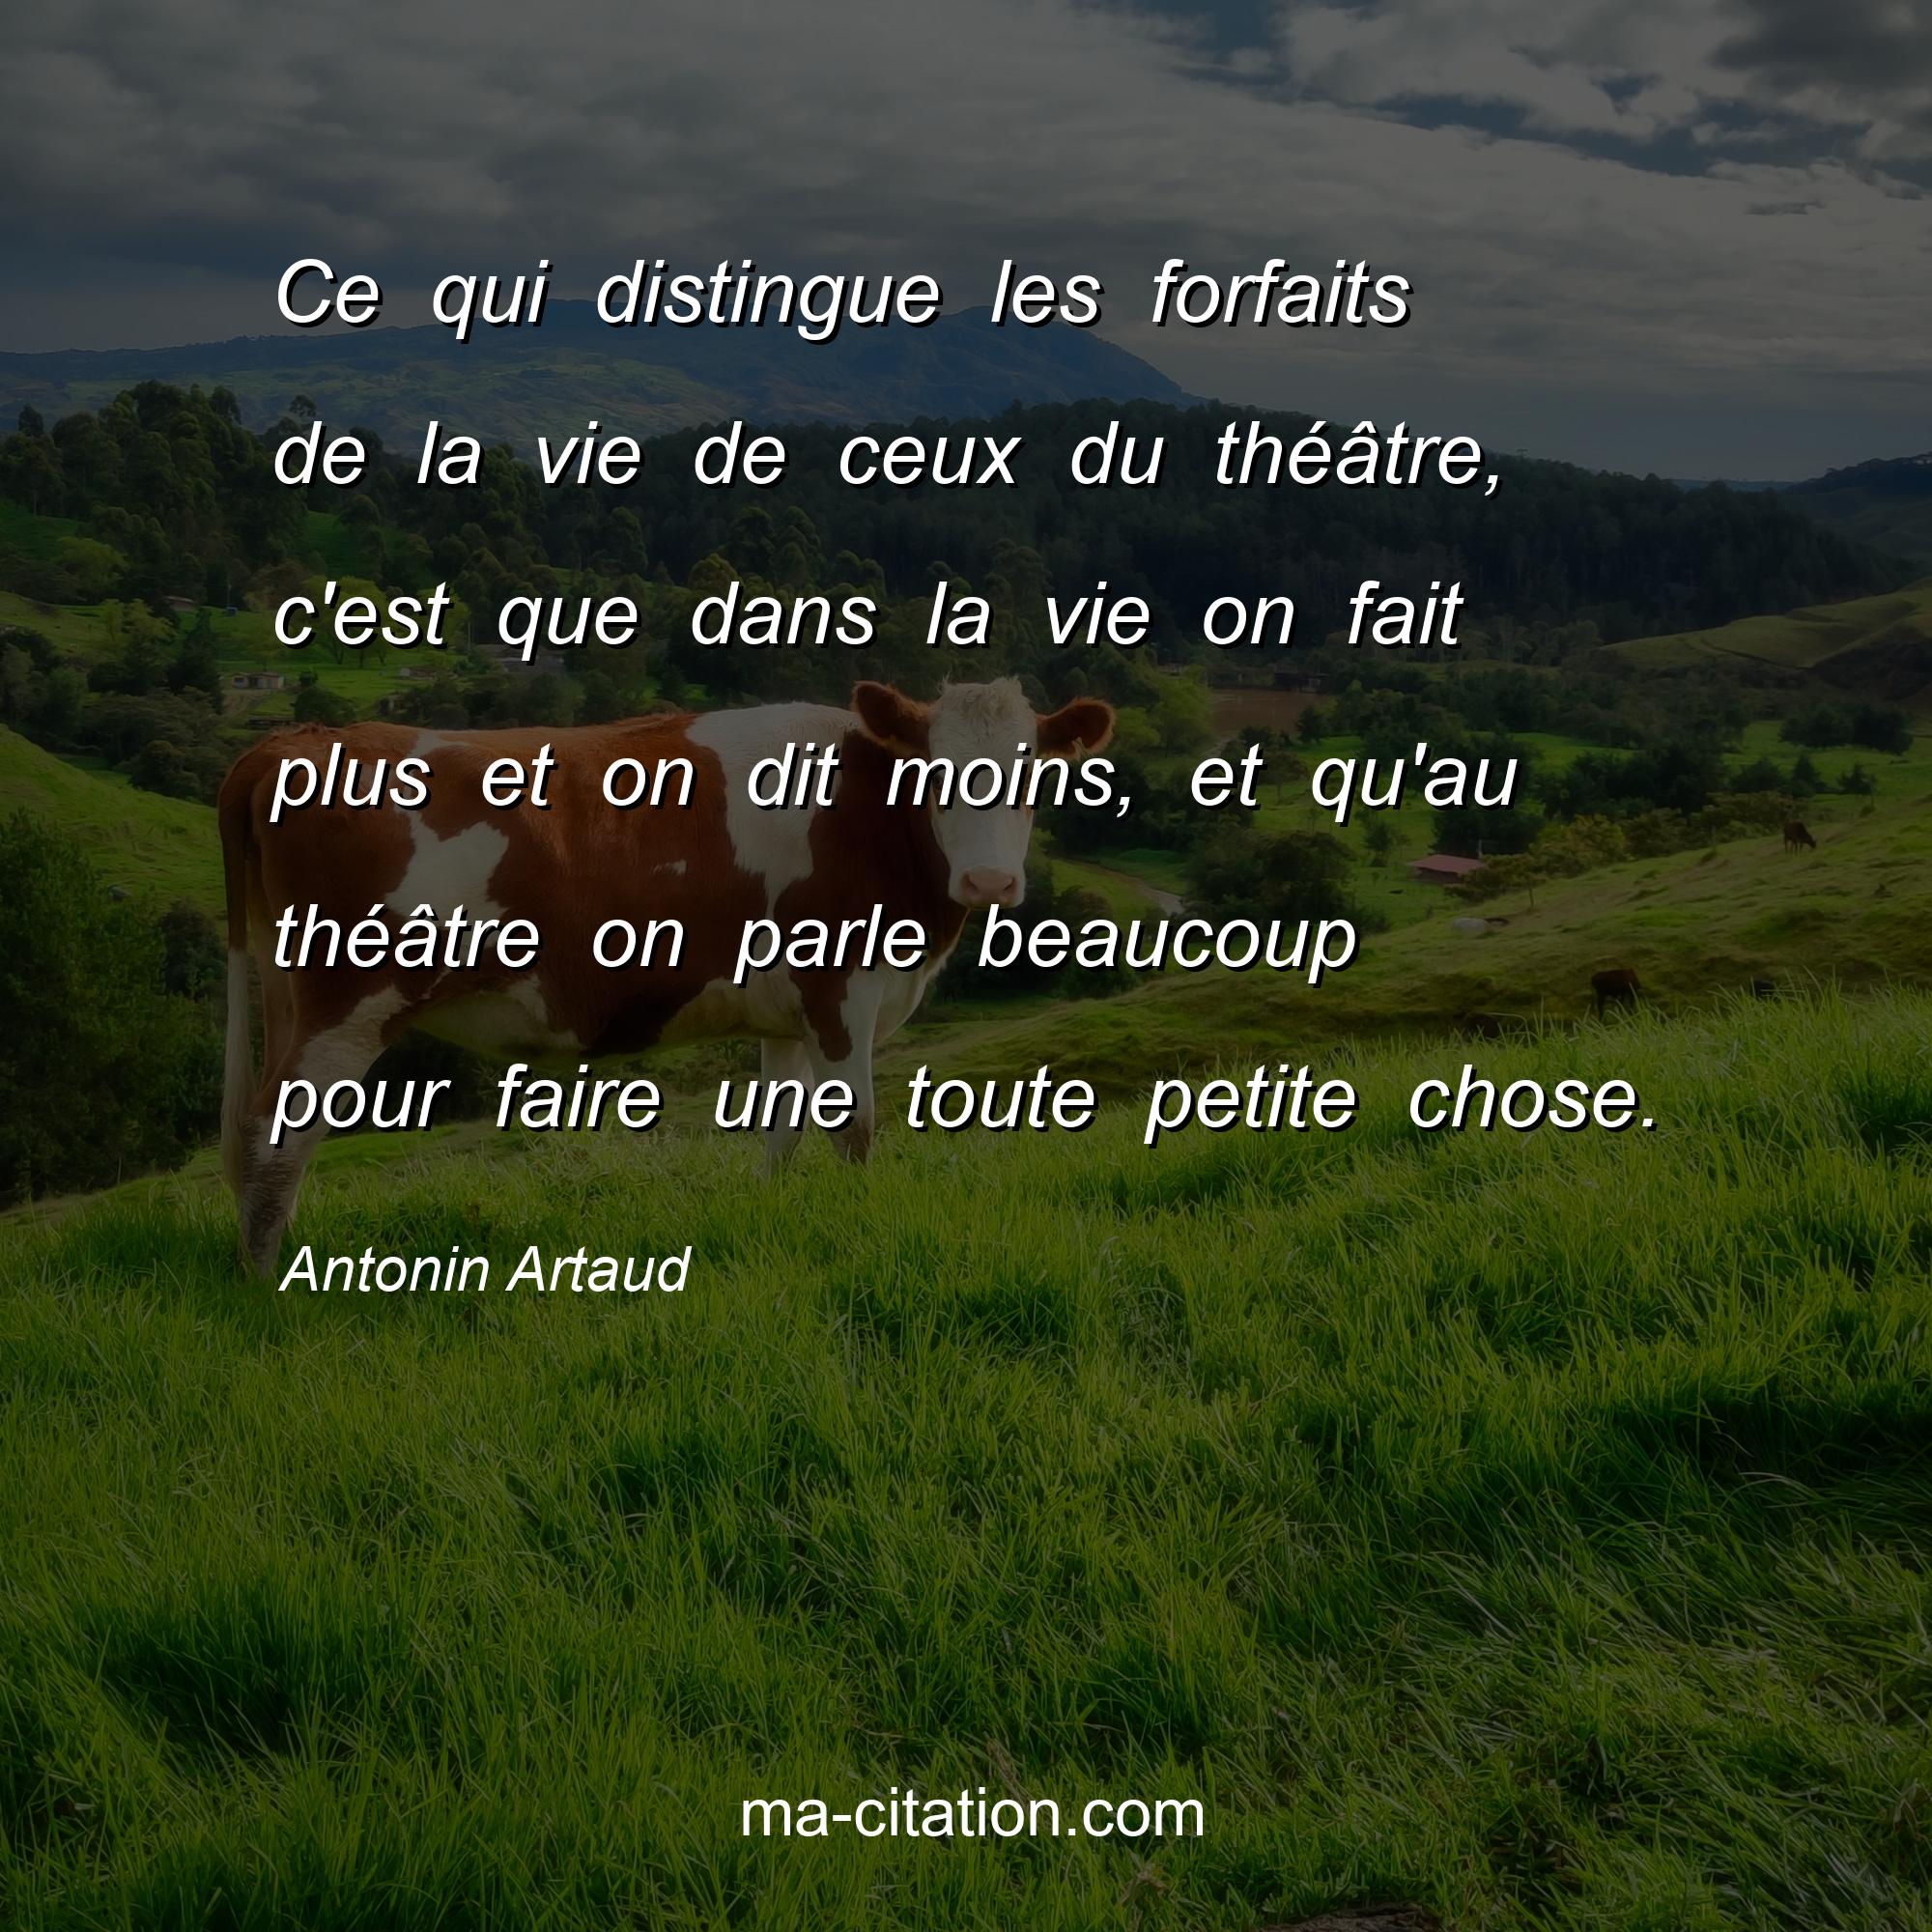 Antonin Artaud : Ce qui distingue les forfaits de la vie de ceux du théâtre, c'est que dans la vie on fait plus et on dit moins, et qu'au théâtre on parle beaucoup pour faire une toute petite chose.